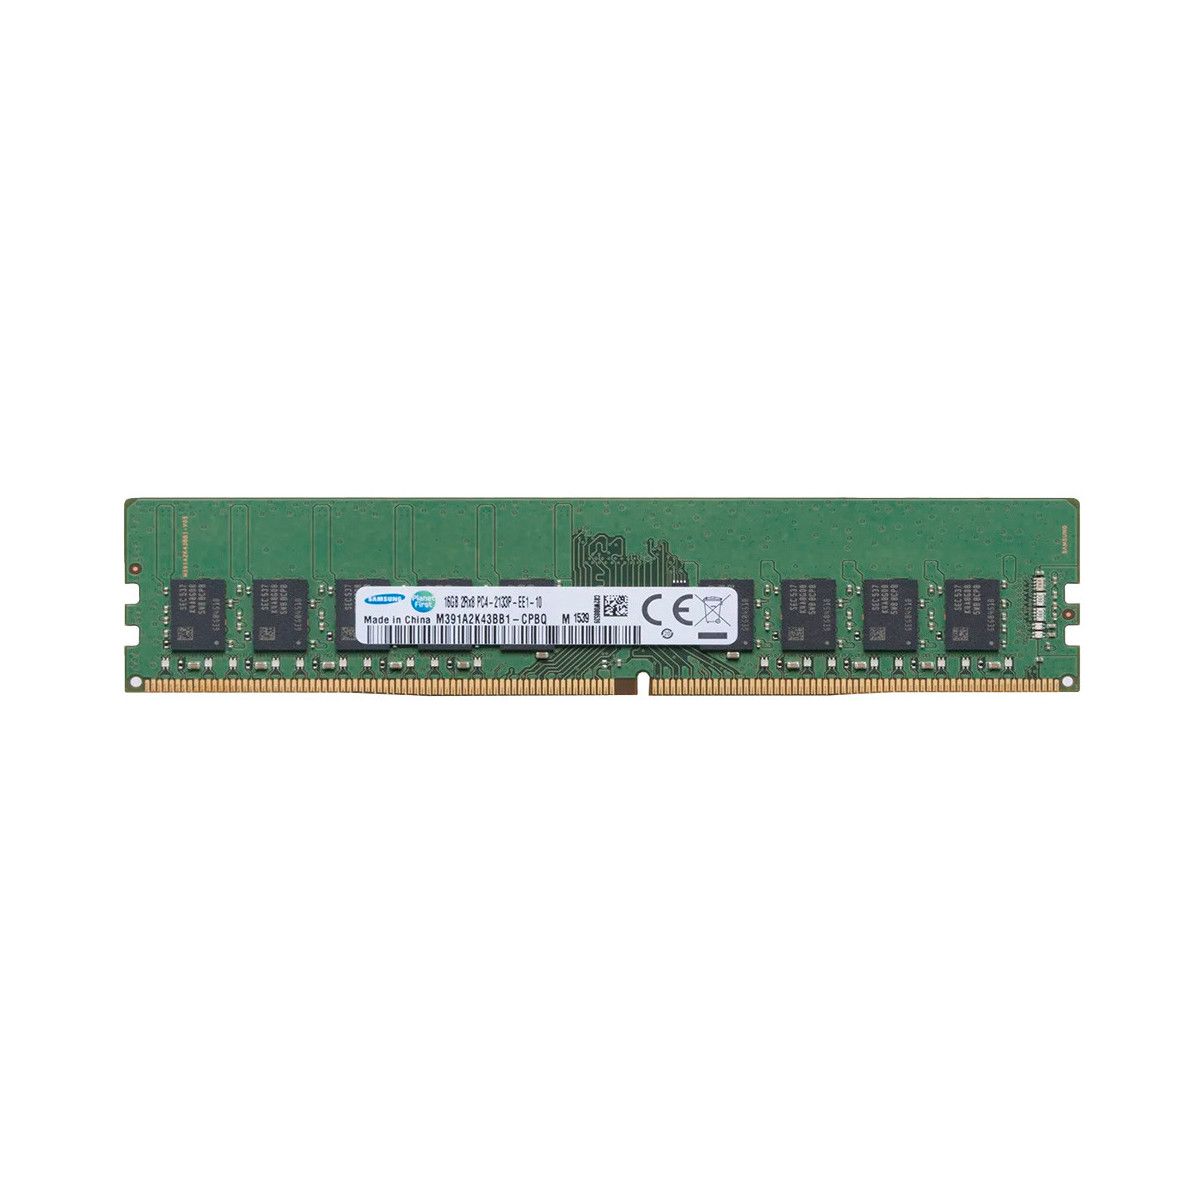 4X70M41718-MS - Memstar 1x 16GB DDR4-2133 ECC UDIMM PC4-17000P-E - Mem-Star Compatible OEM Memoria 1 - Memstar 